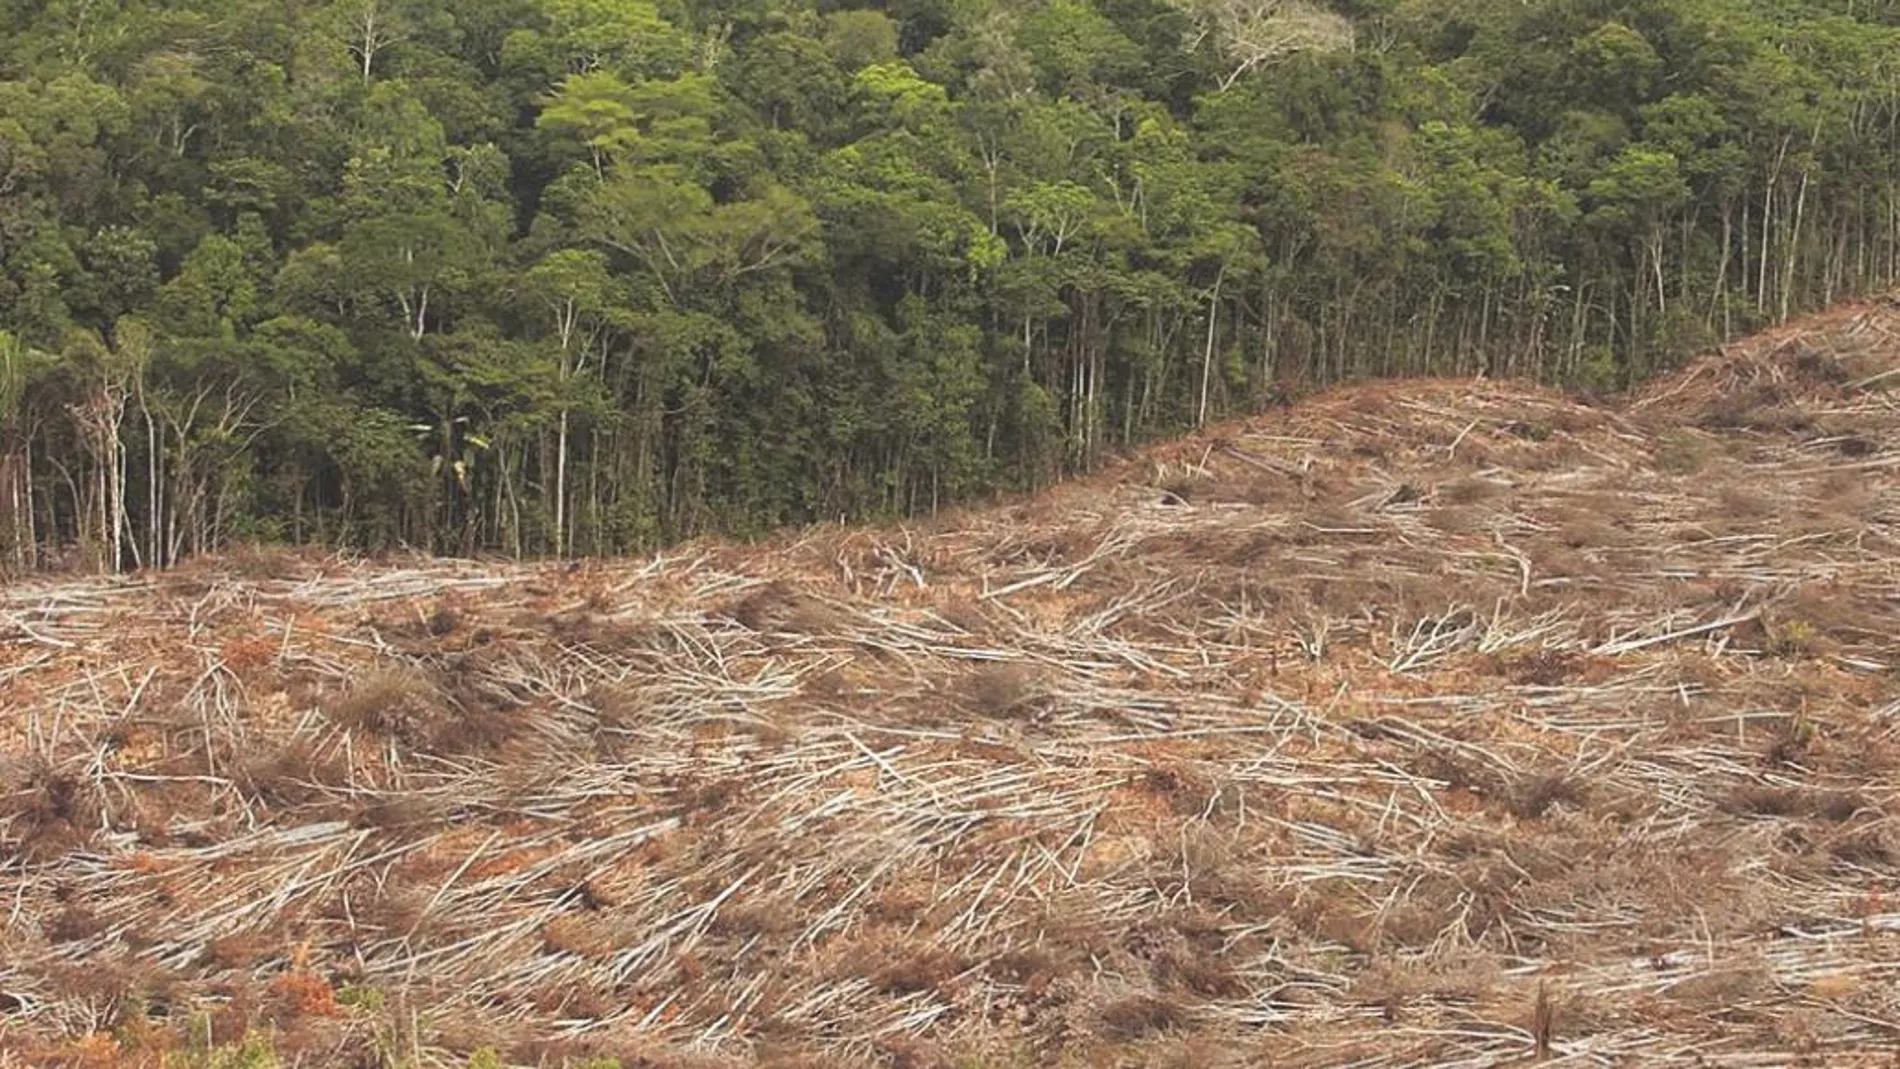 La deforestación es uno de los efectos perniciosos de la sobreexplotación de los cultivos de palma